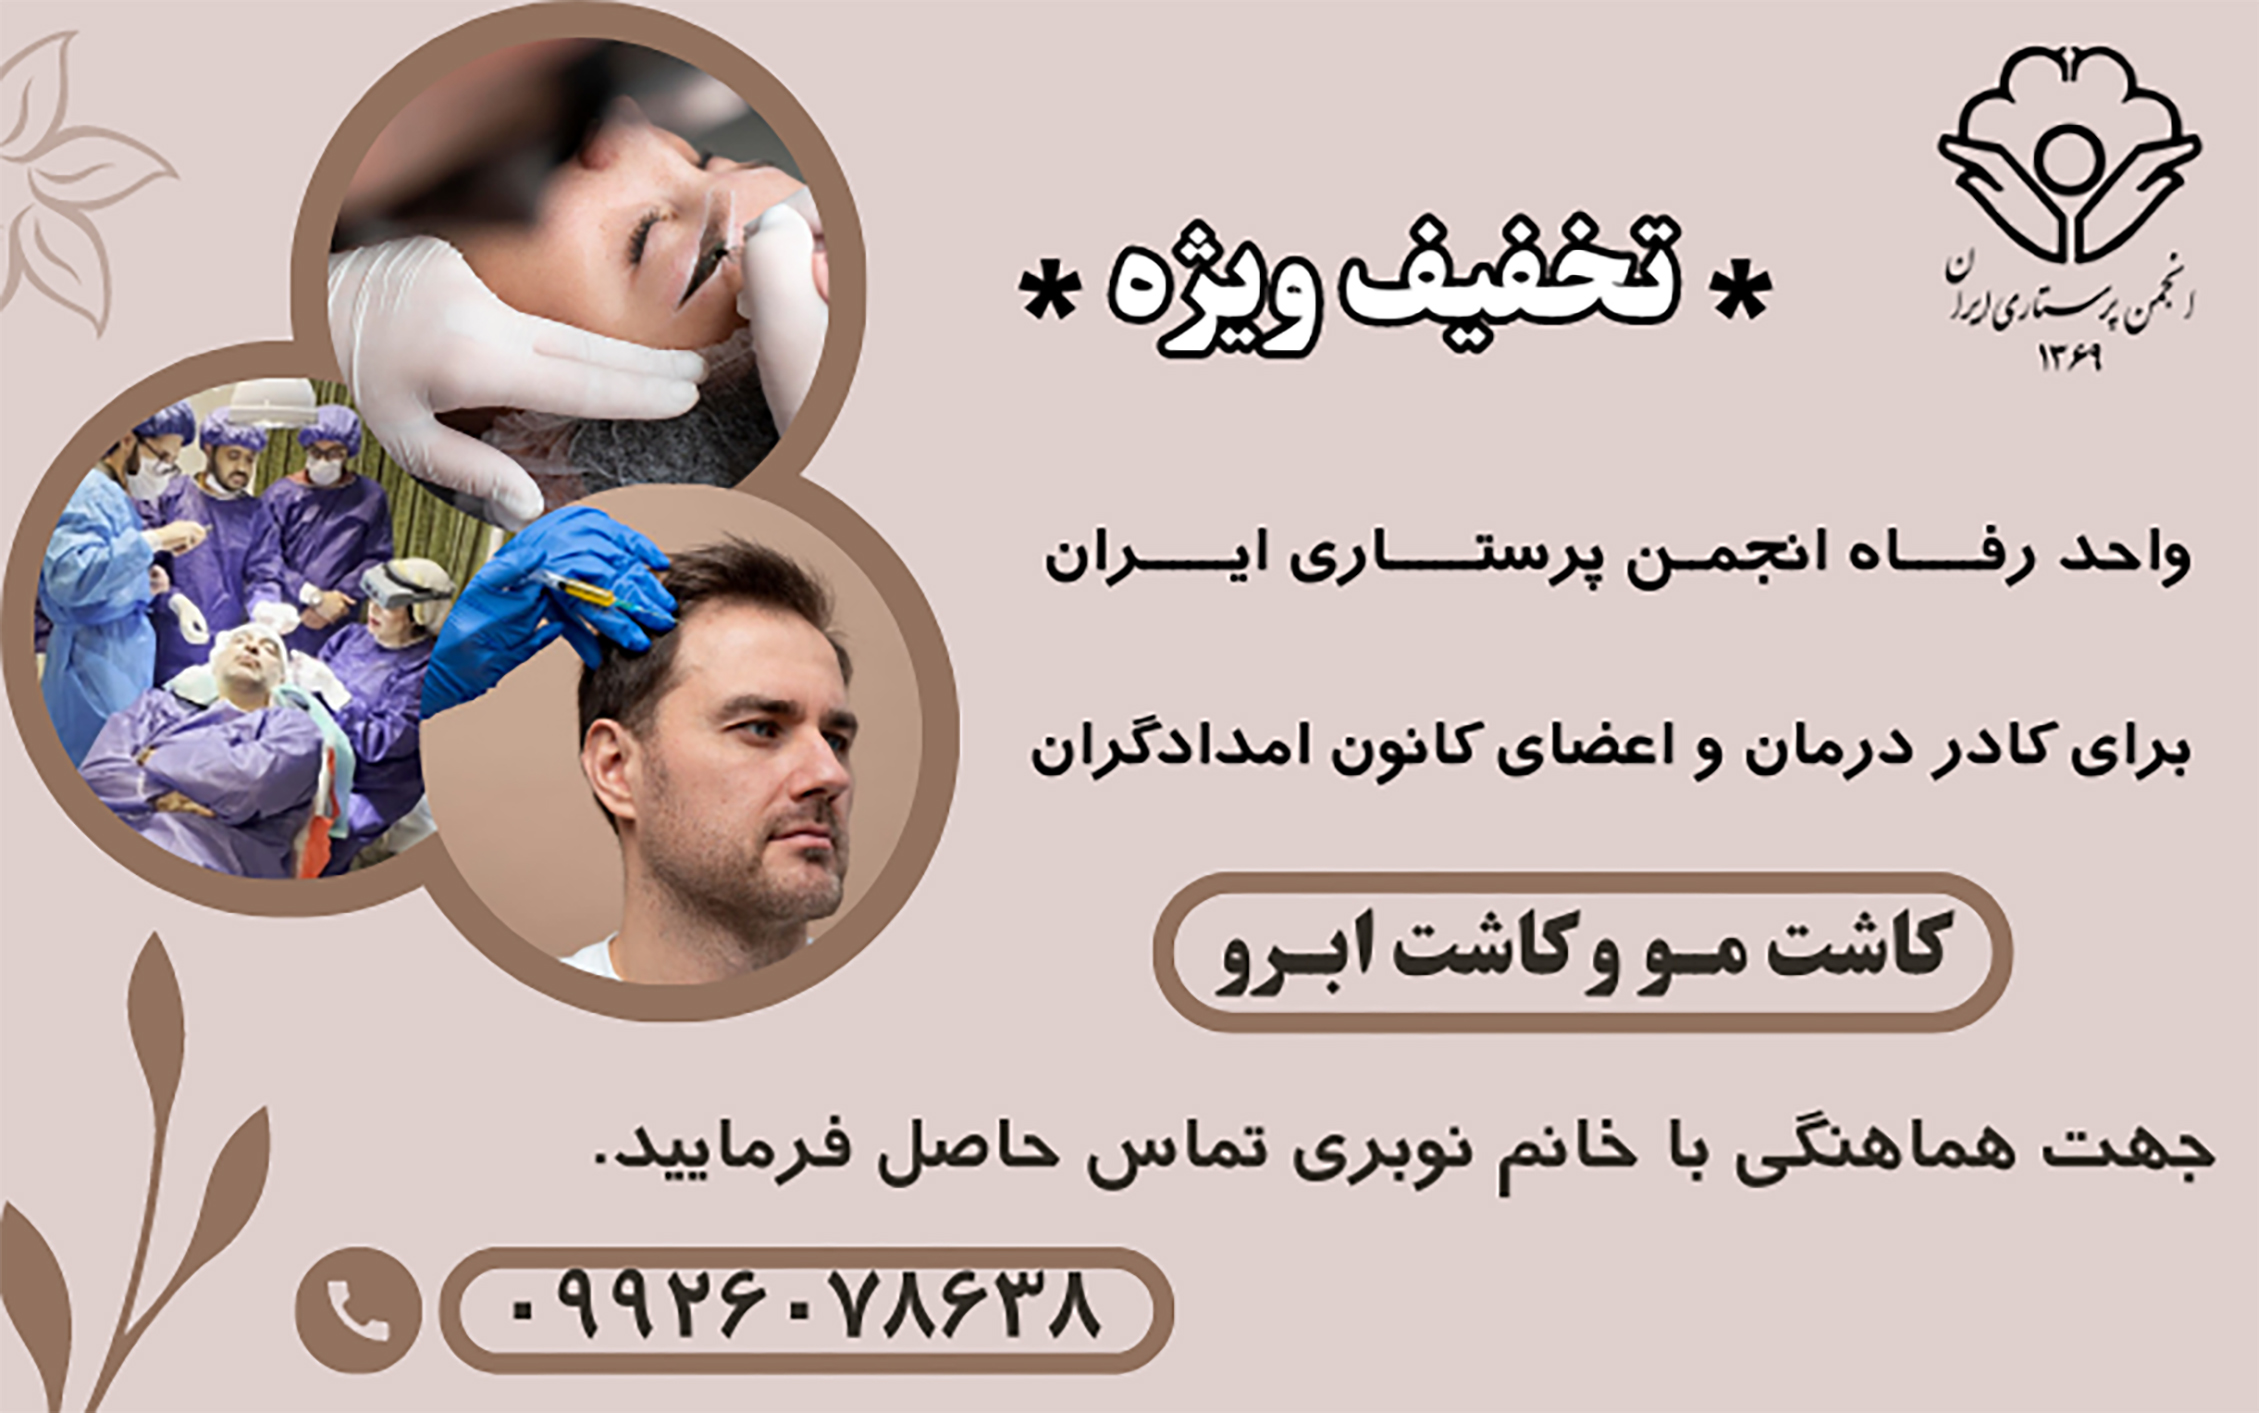 کلینیک زیبایی، واحد رفاه انجمن پرستاری ایران